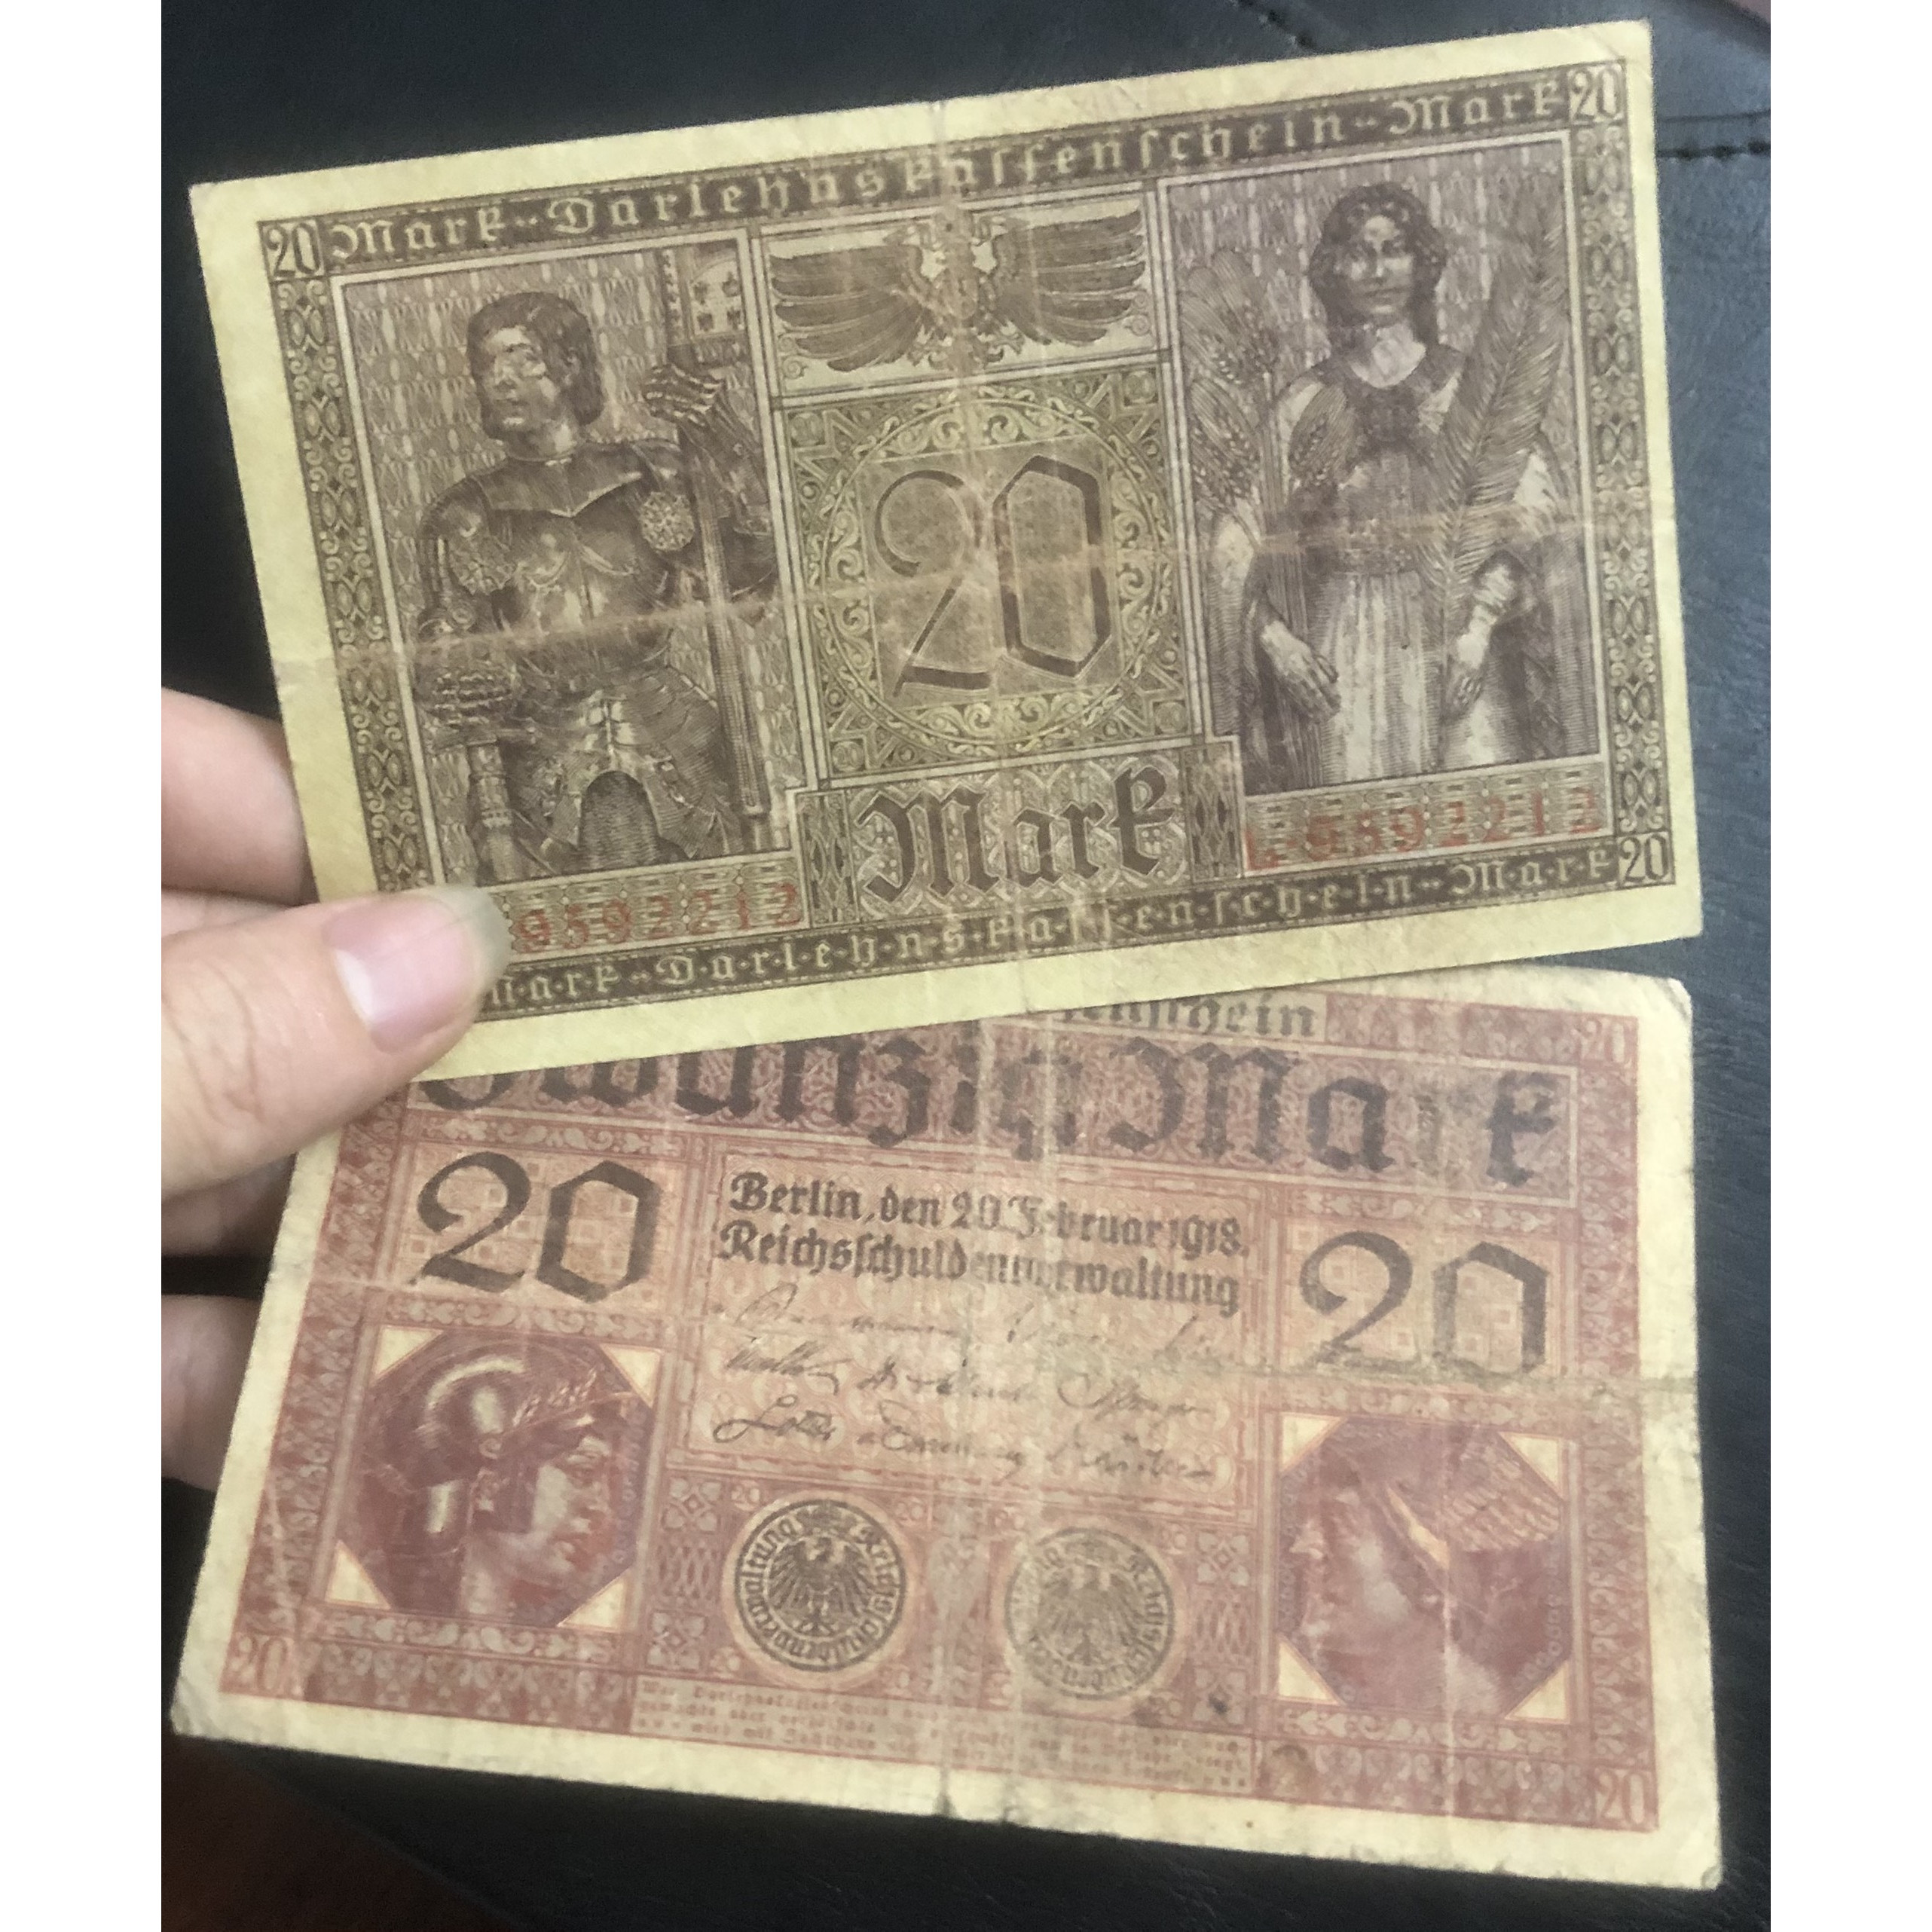 Tiền ĐỨc cổ 20 mark 1918 sưu tầm, đậm chất châu Âu xưa